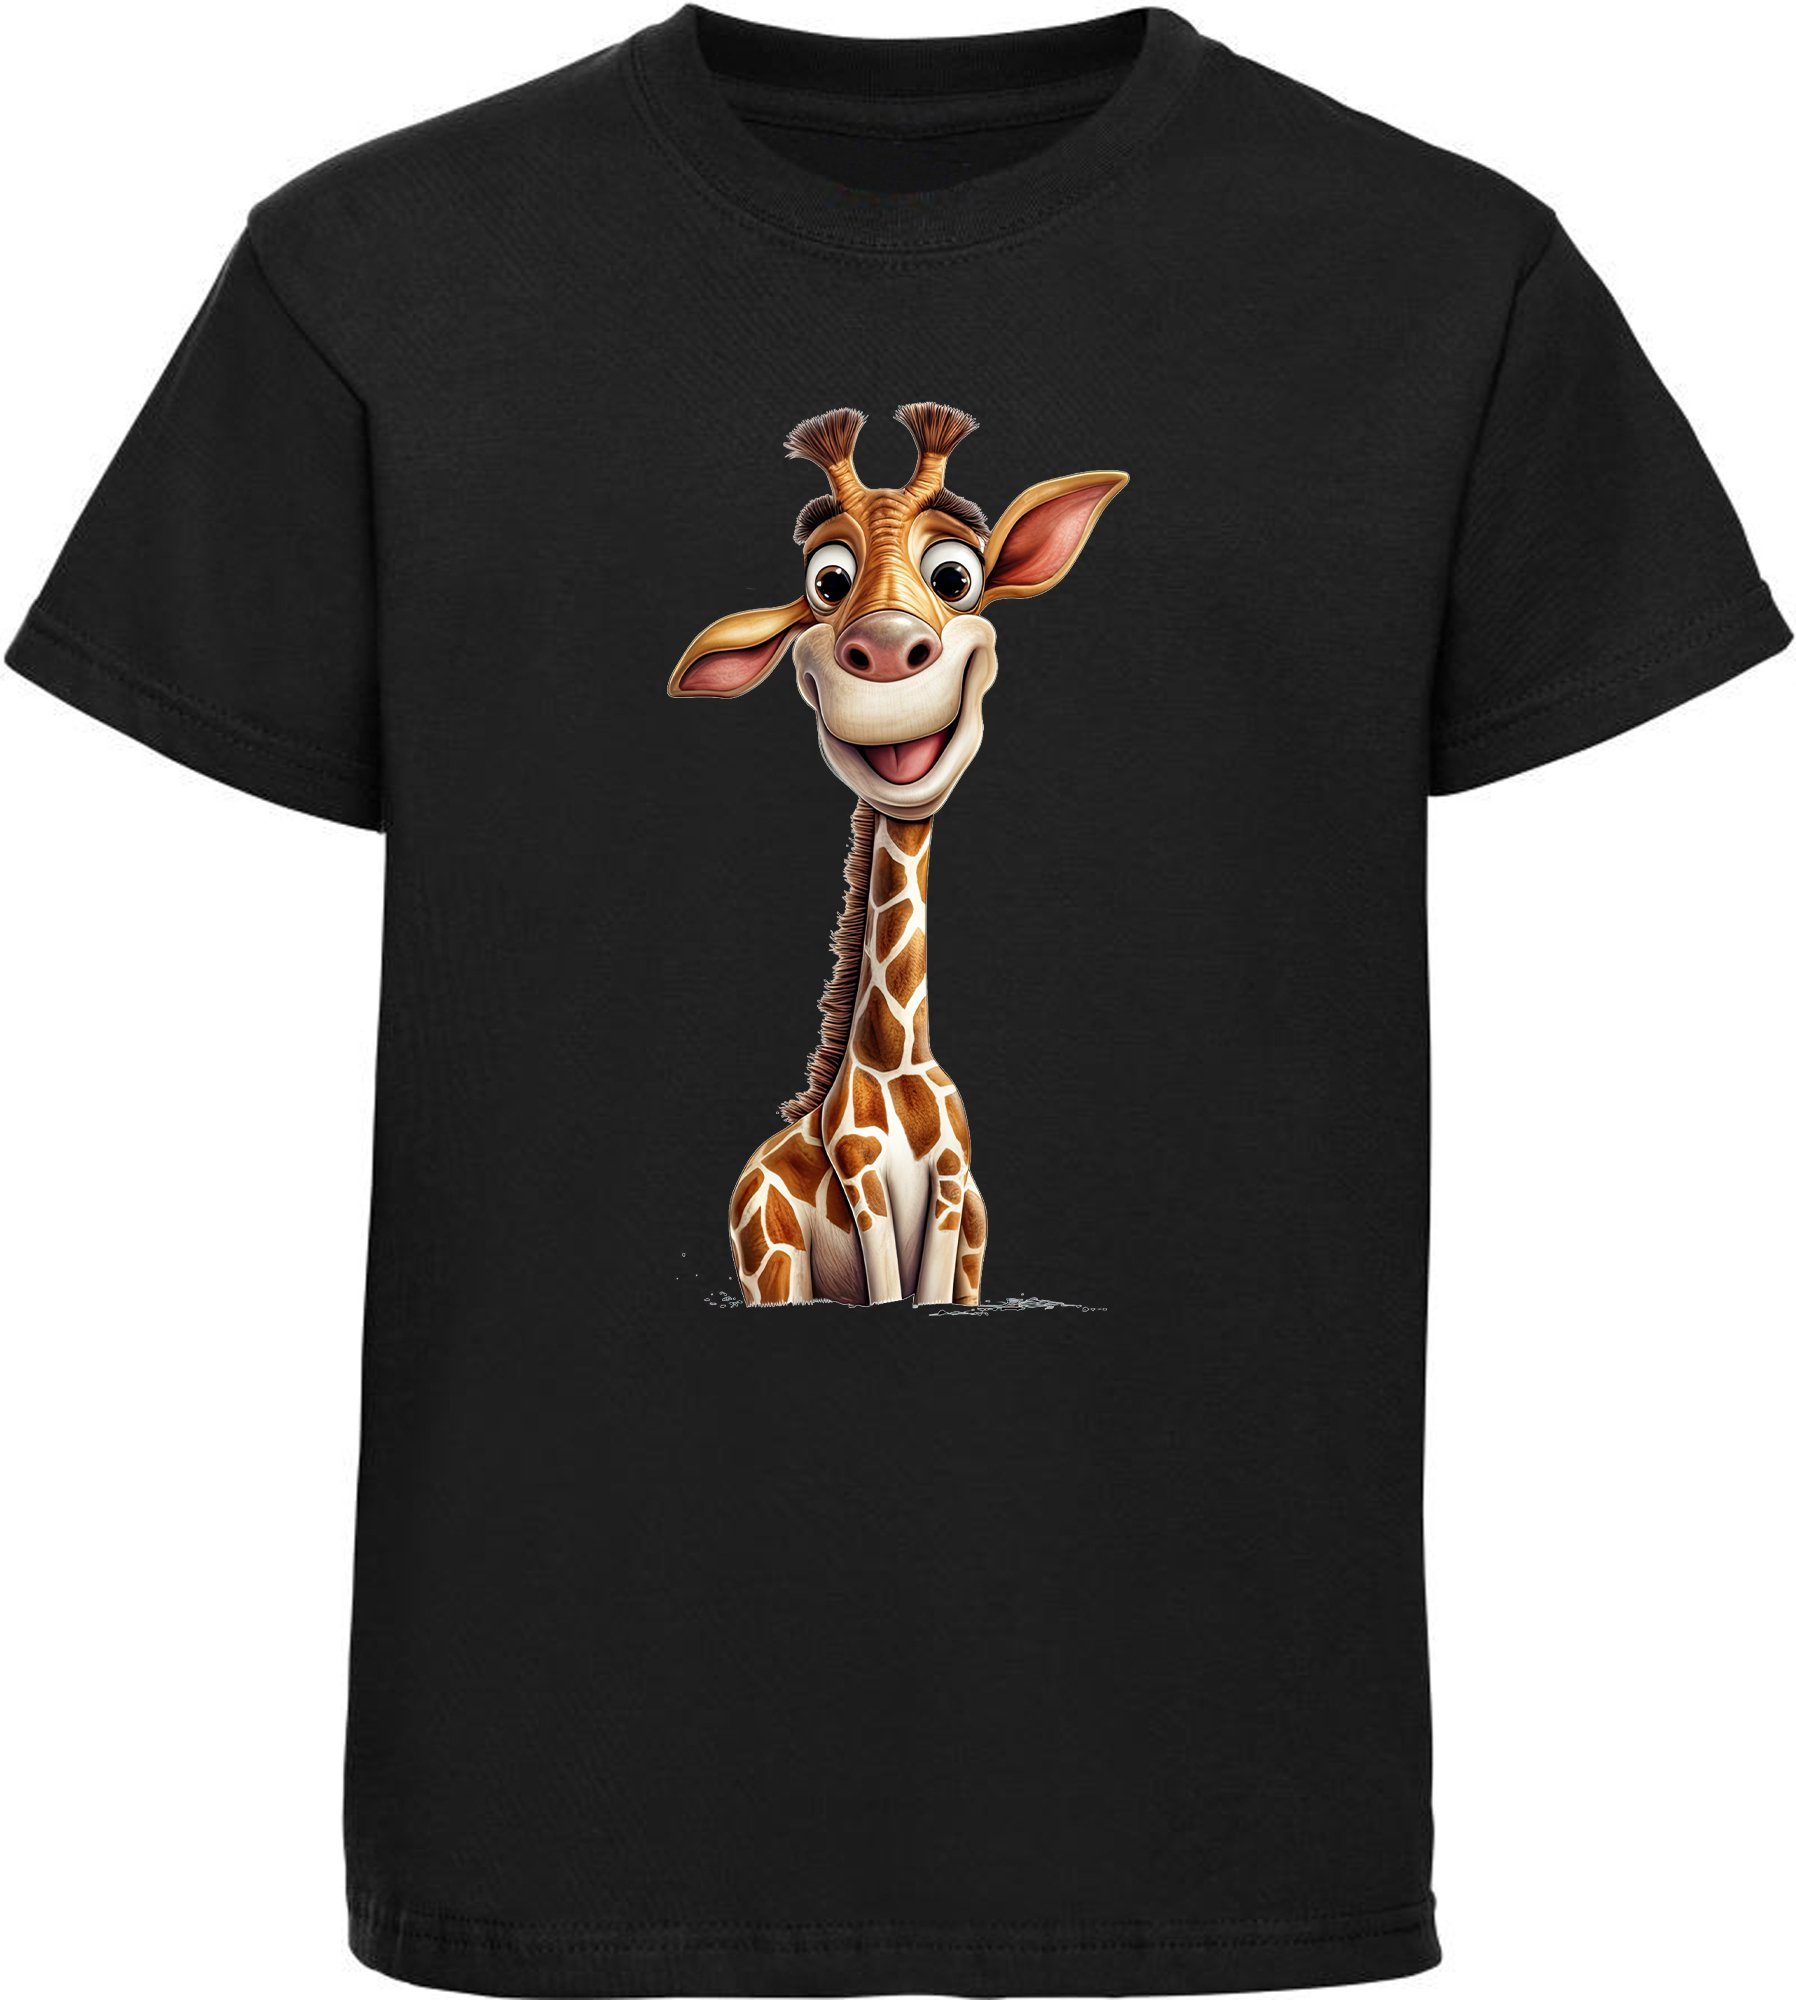 MyDesign24 T-Shirt Kinder Wildtier Print Shirt bedruckt - Baby Giraffe Baumwollshirt mit Aufdruck, i273 schwarz